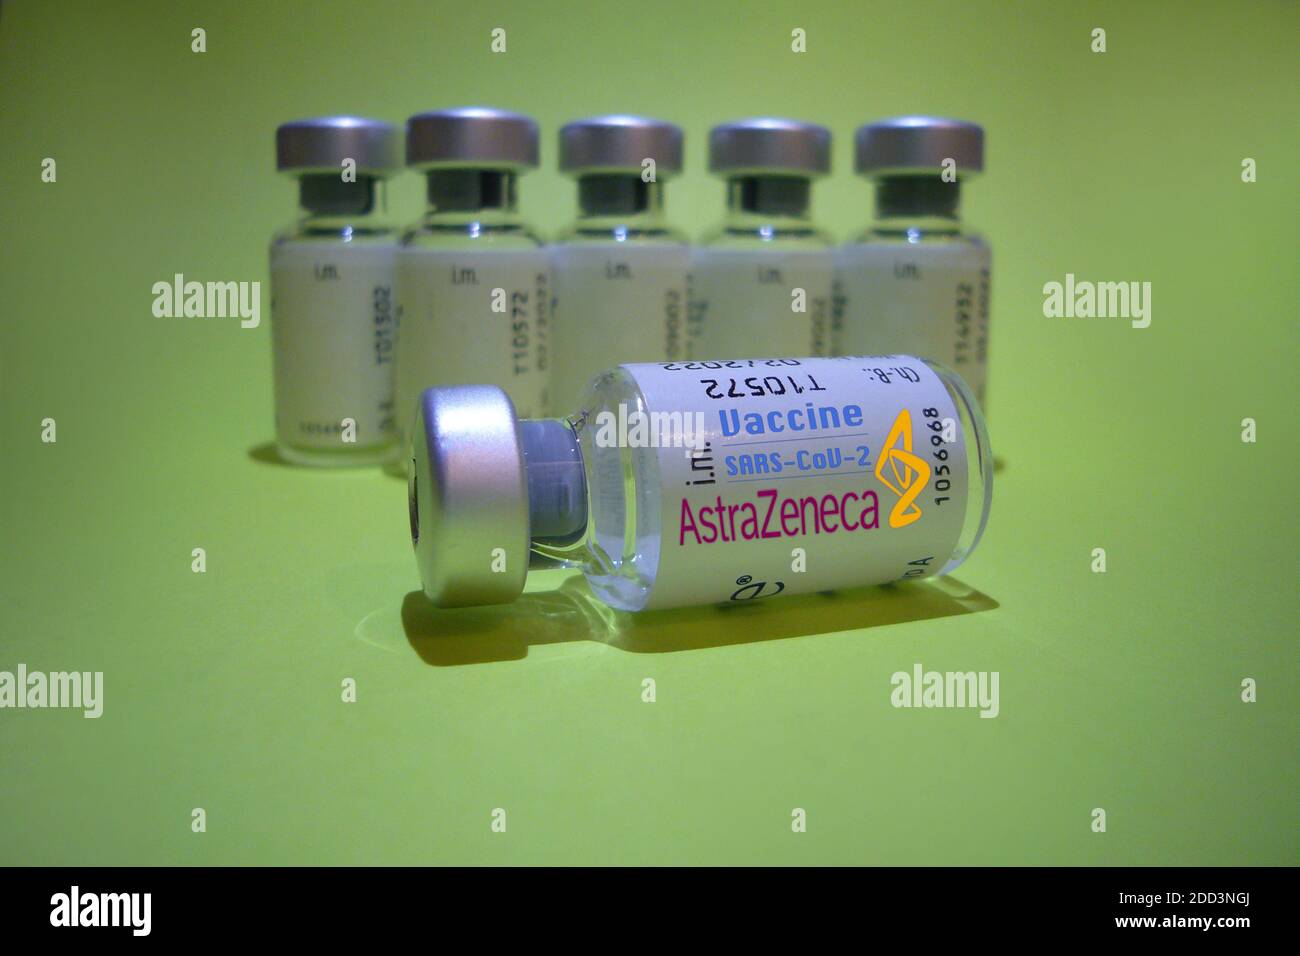 Hair, Deutschland. November 2020. Themenbild, Symbolfoto: Corona-Impfstoff. Einfacher und billiger AstraZeneca macht den Impfstoff für die Massen. Impfdosen von AstraZeneca weltweit Kredit: dpa/Alamy Live News Stockfoto